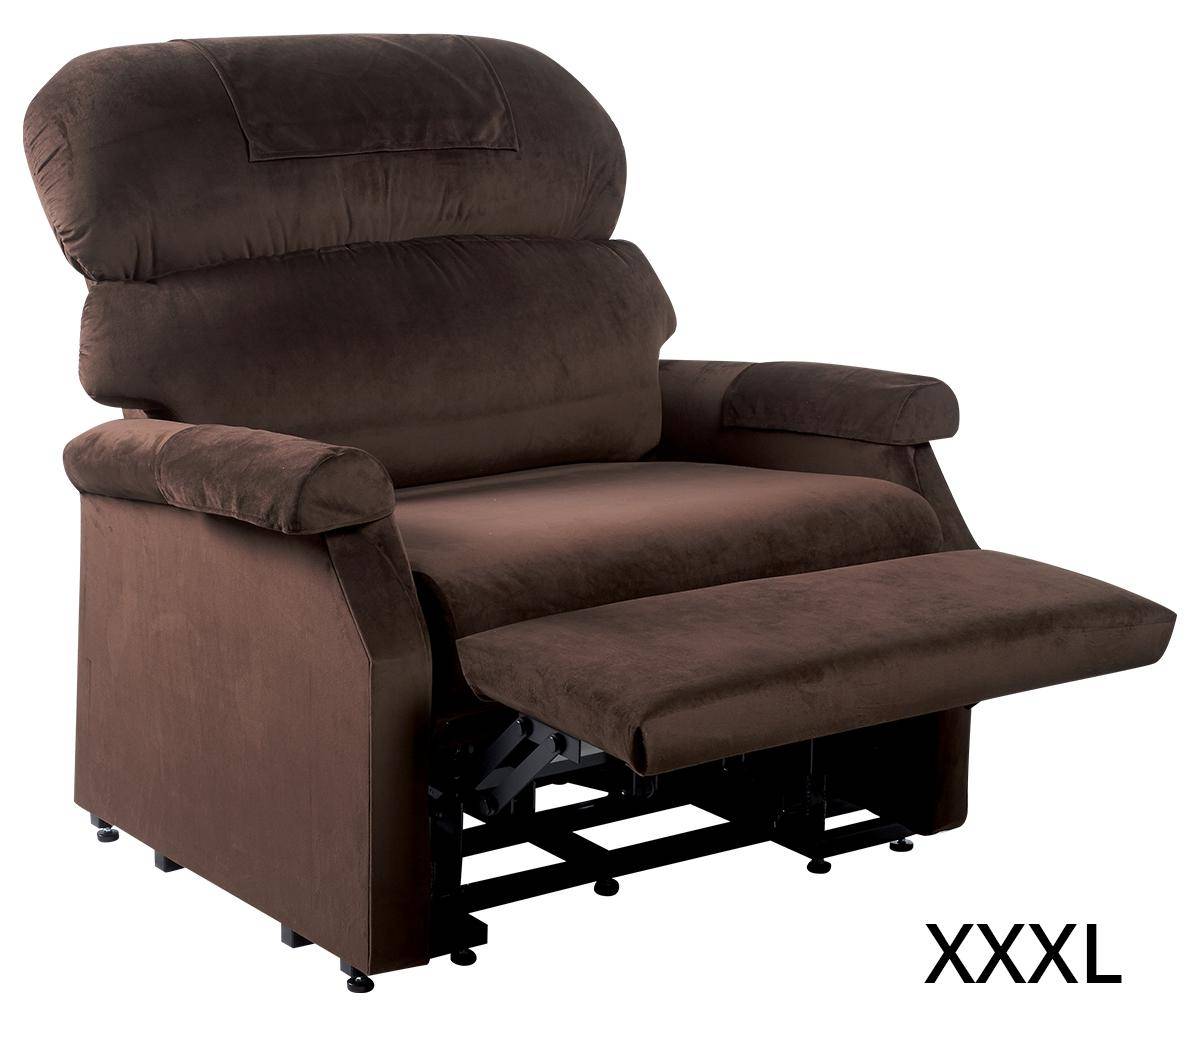 XL Sessel, XXL Sessel und XXXL Sessel von GOLDEN kaufen